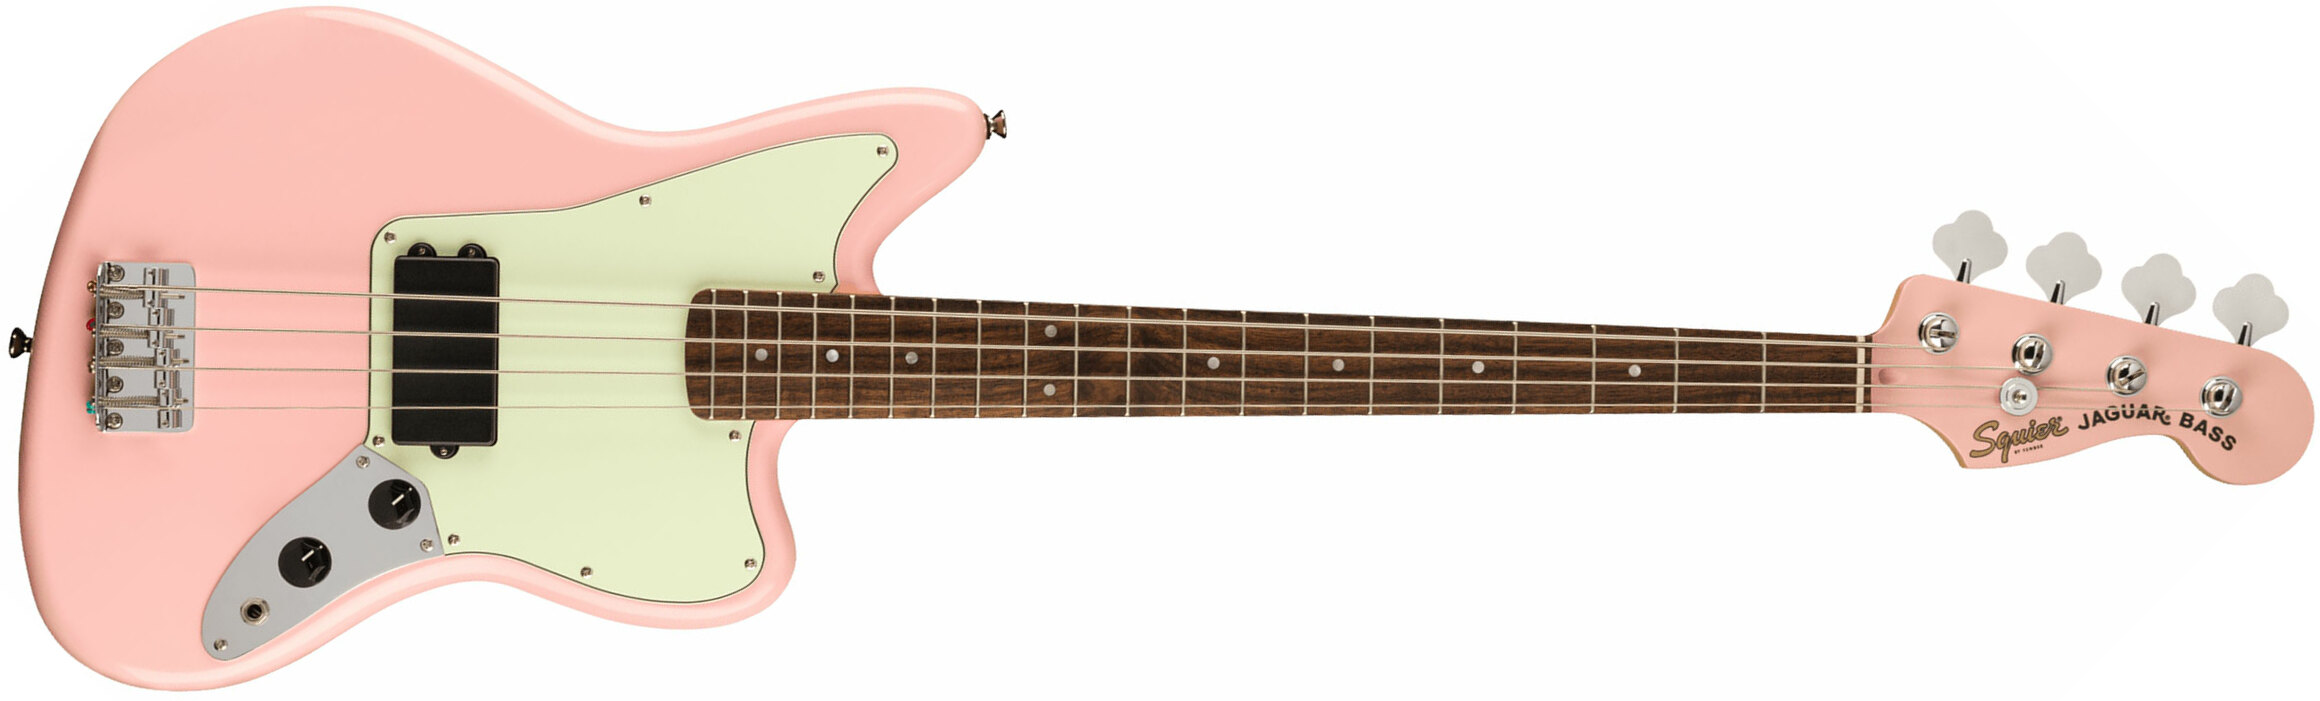 Squier Jaguar Bass H Affinity Fsr Lau - Shell Pink - Basse Électrique Solid Body - Main picture